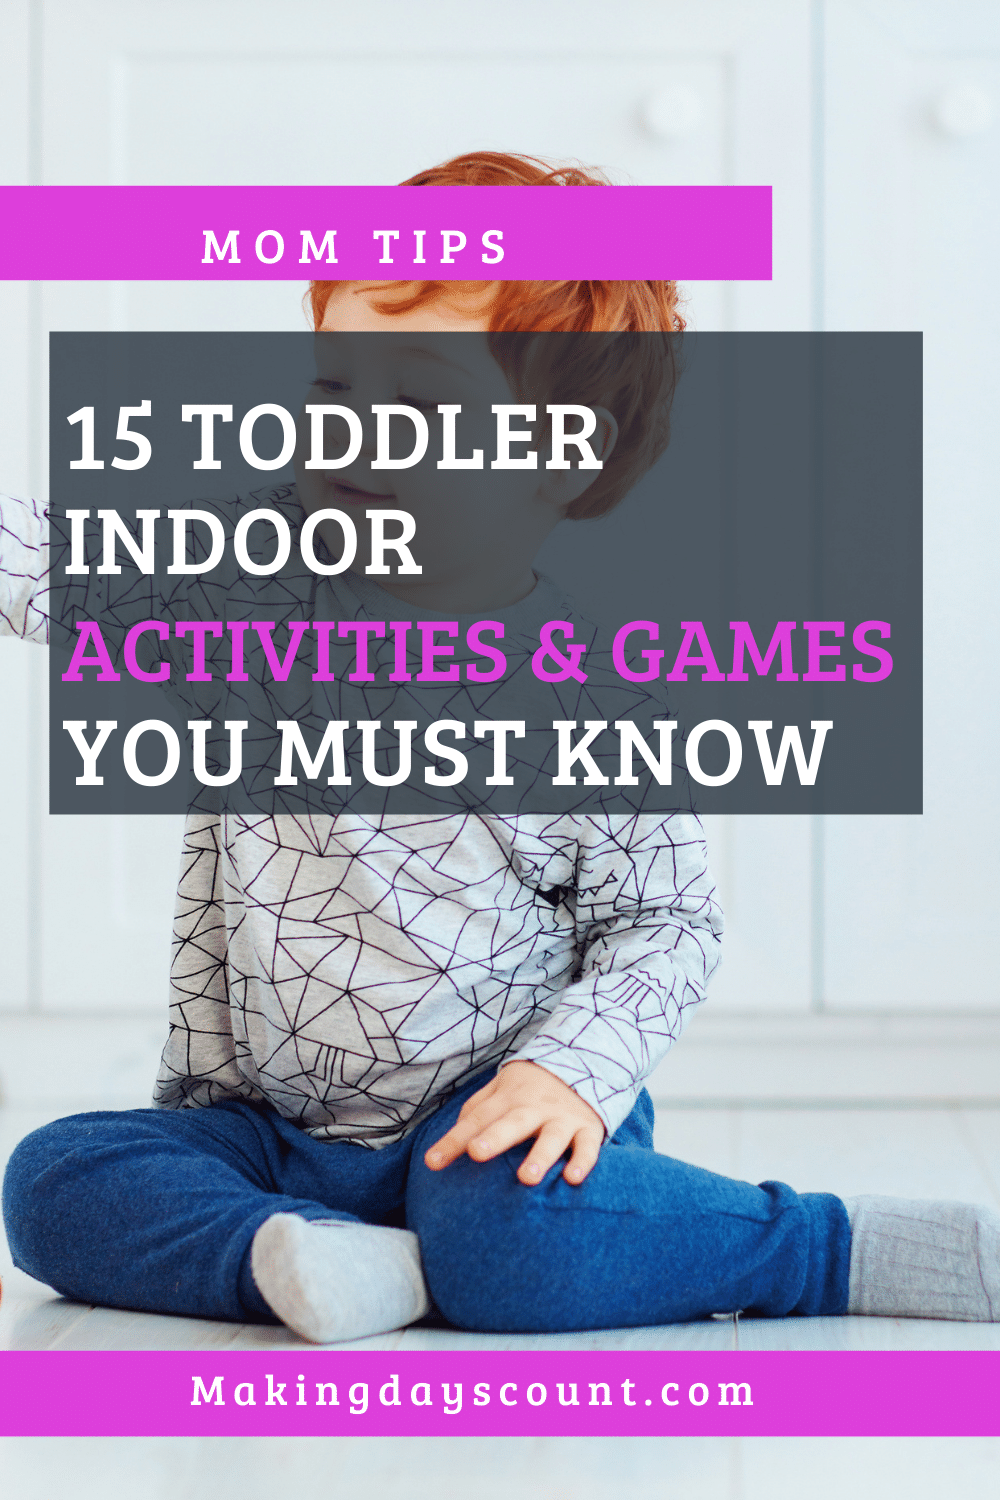 Indoor Toddler Activities